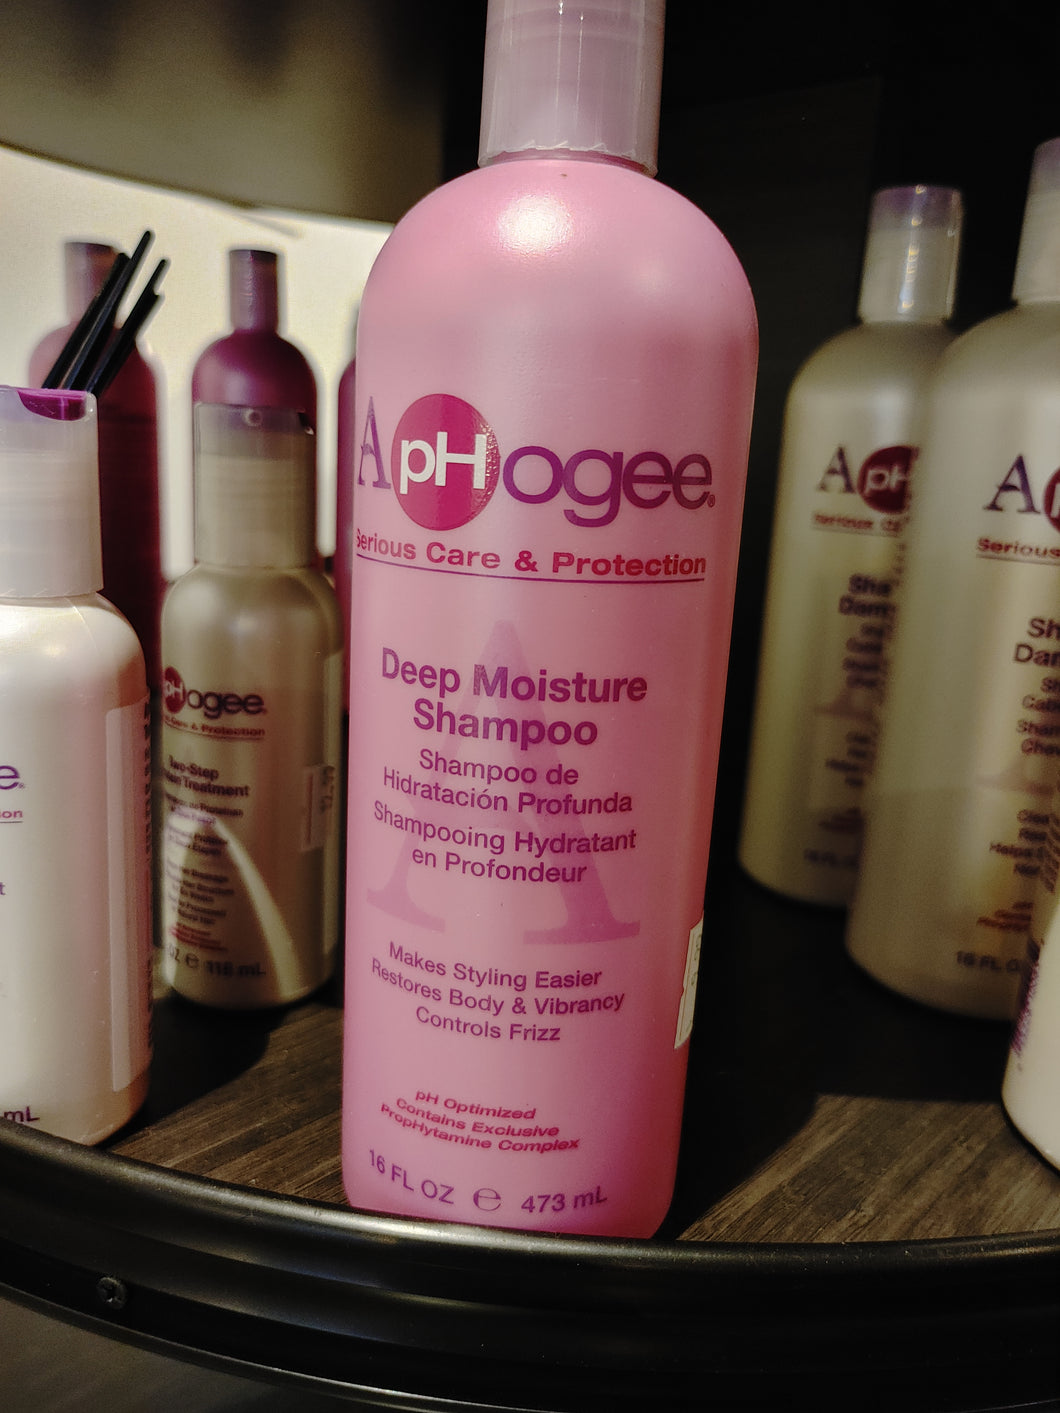 Aphogee Deep Moisture Shampoo